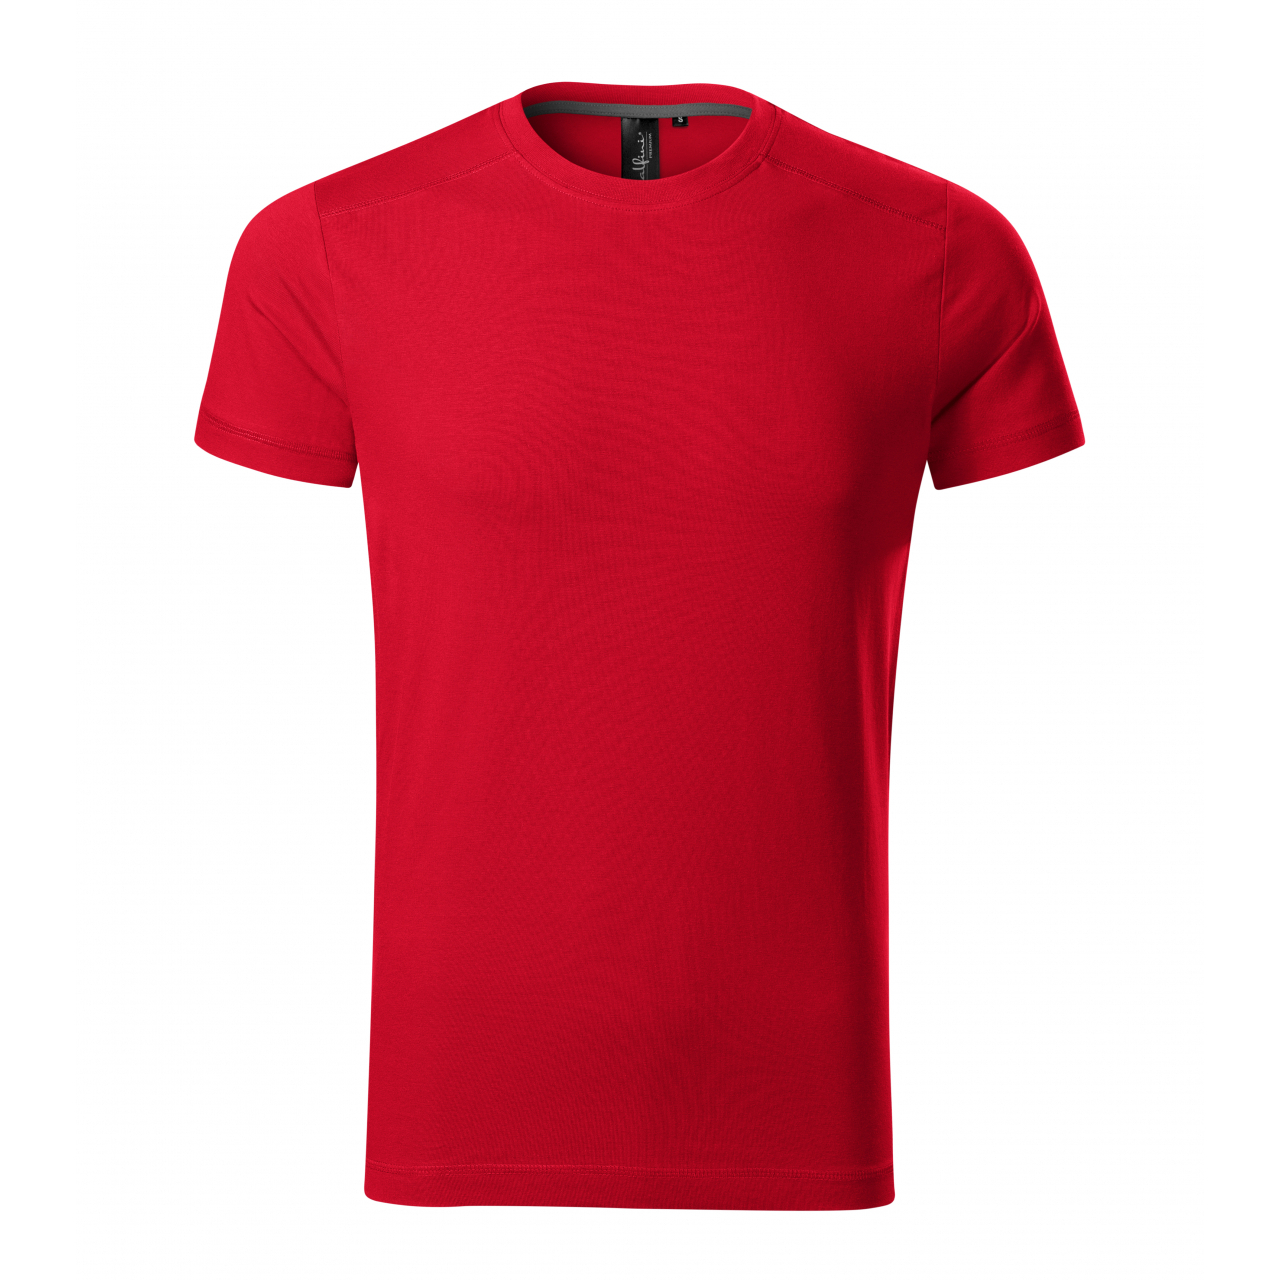 Tričko pánské Malfini Action - červené, XL